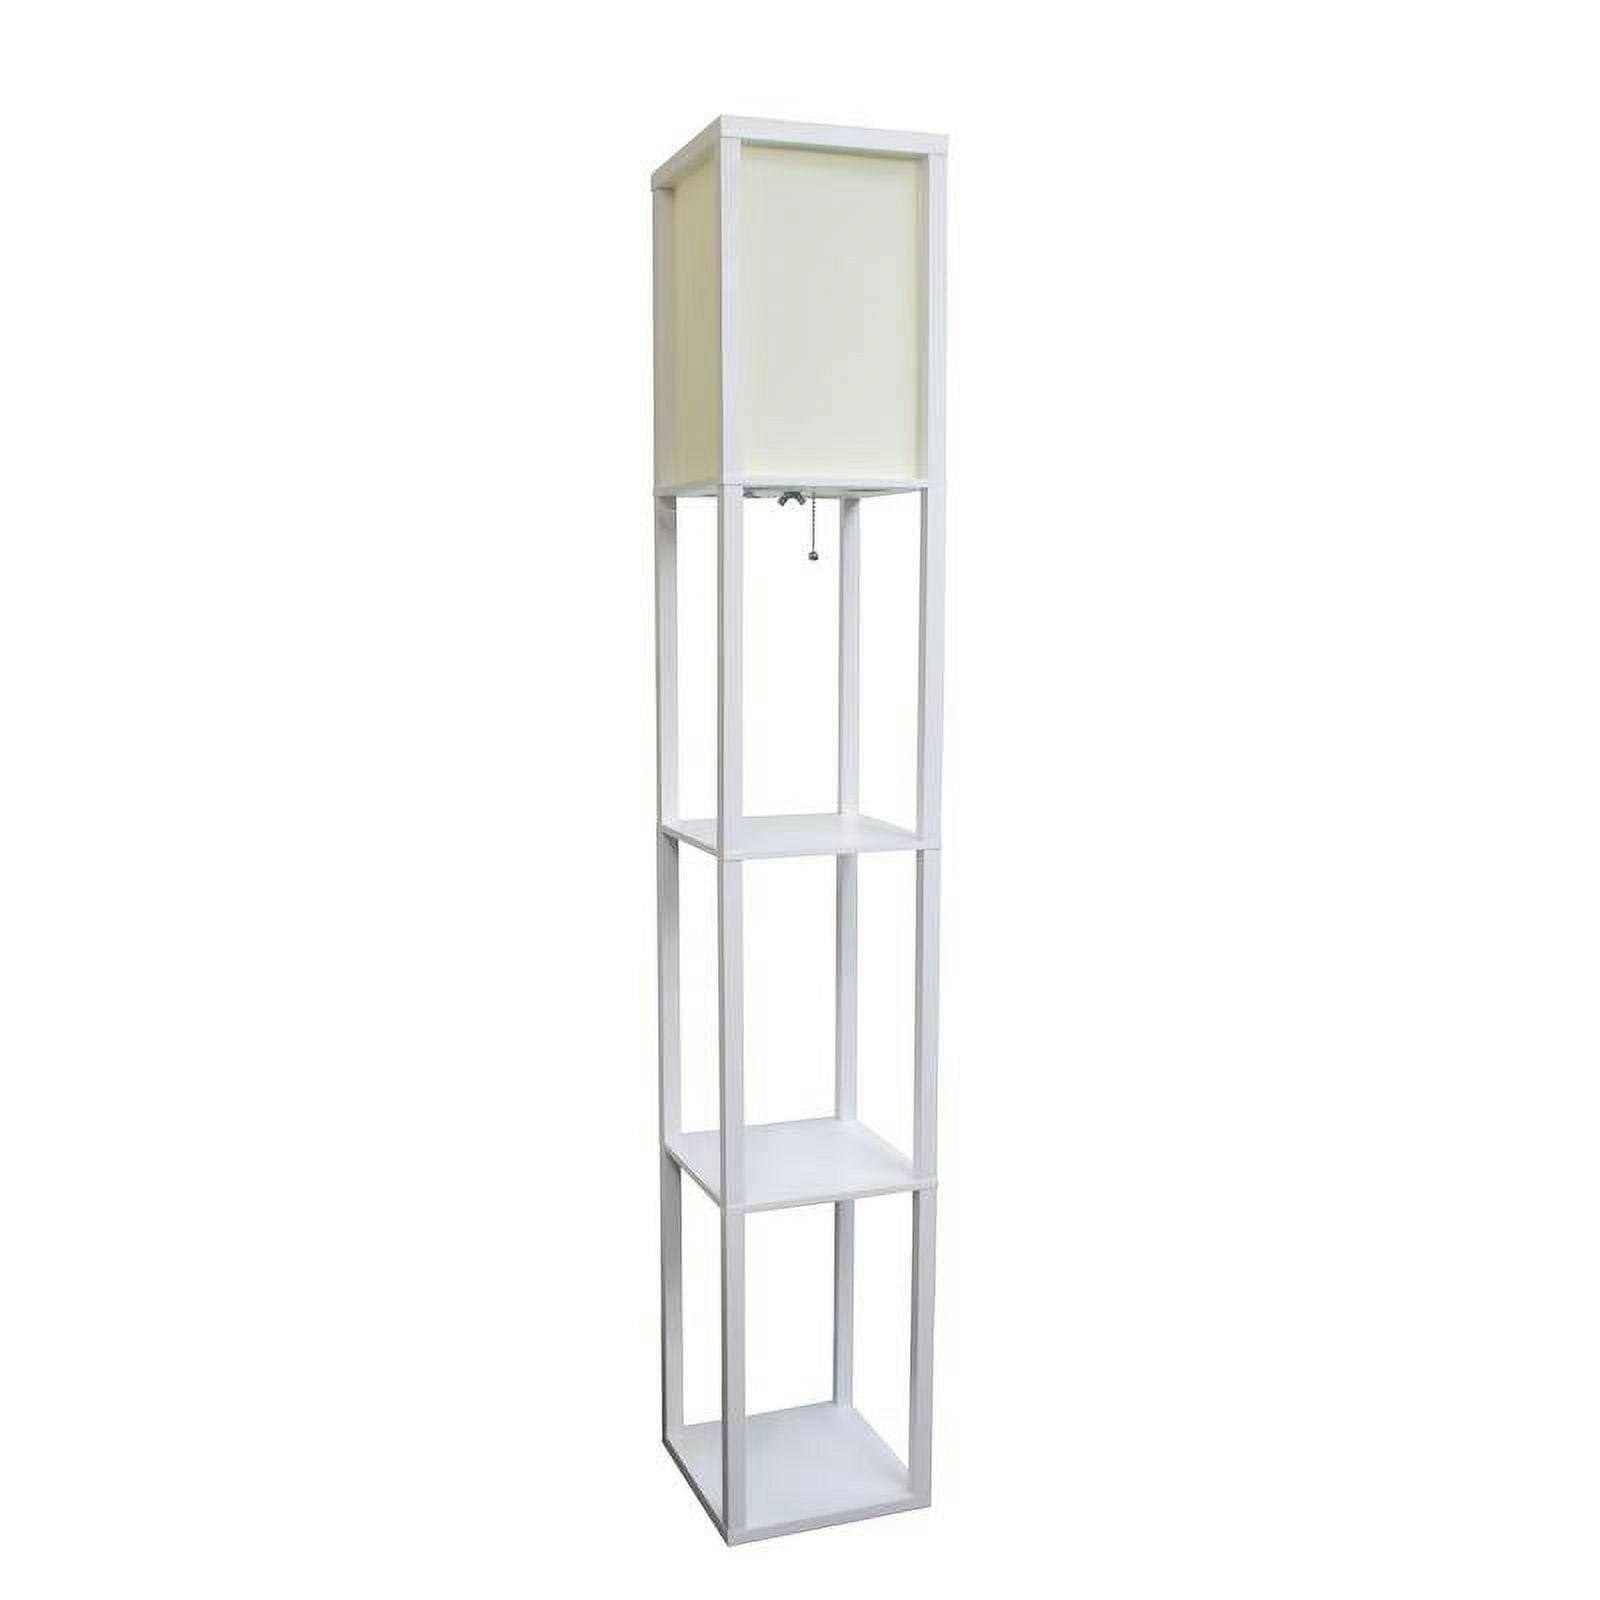 Elegante 62.5" White Linen Shade Floor Lamp with Storage Shelves